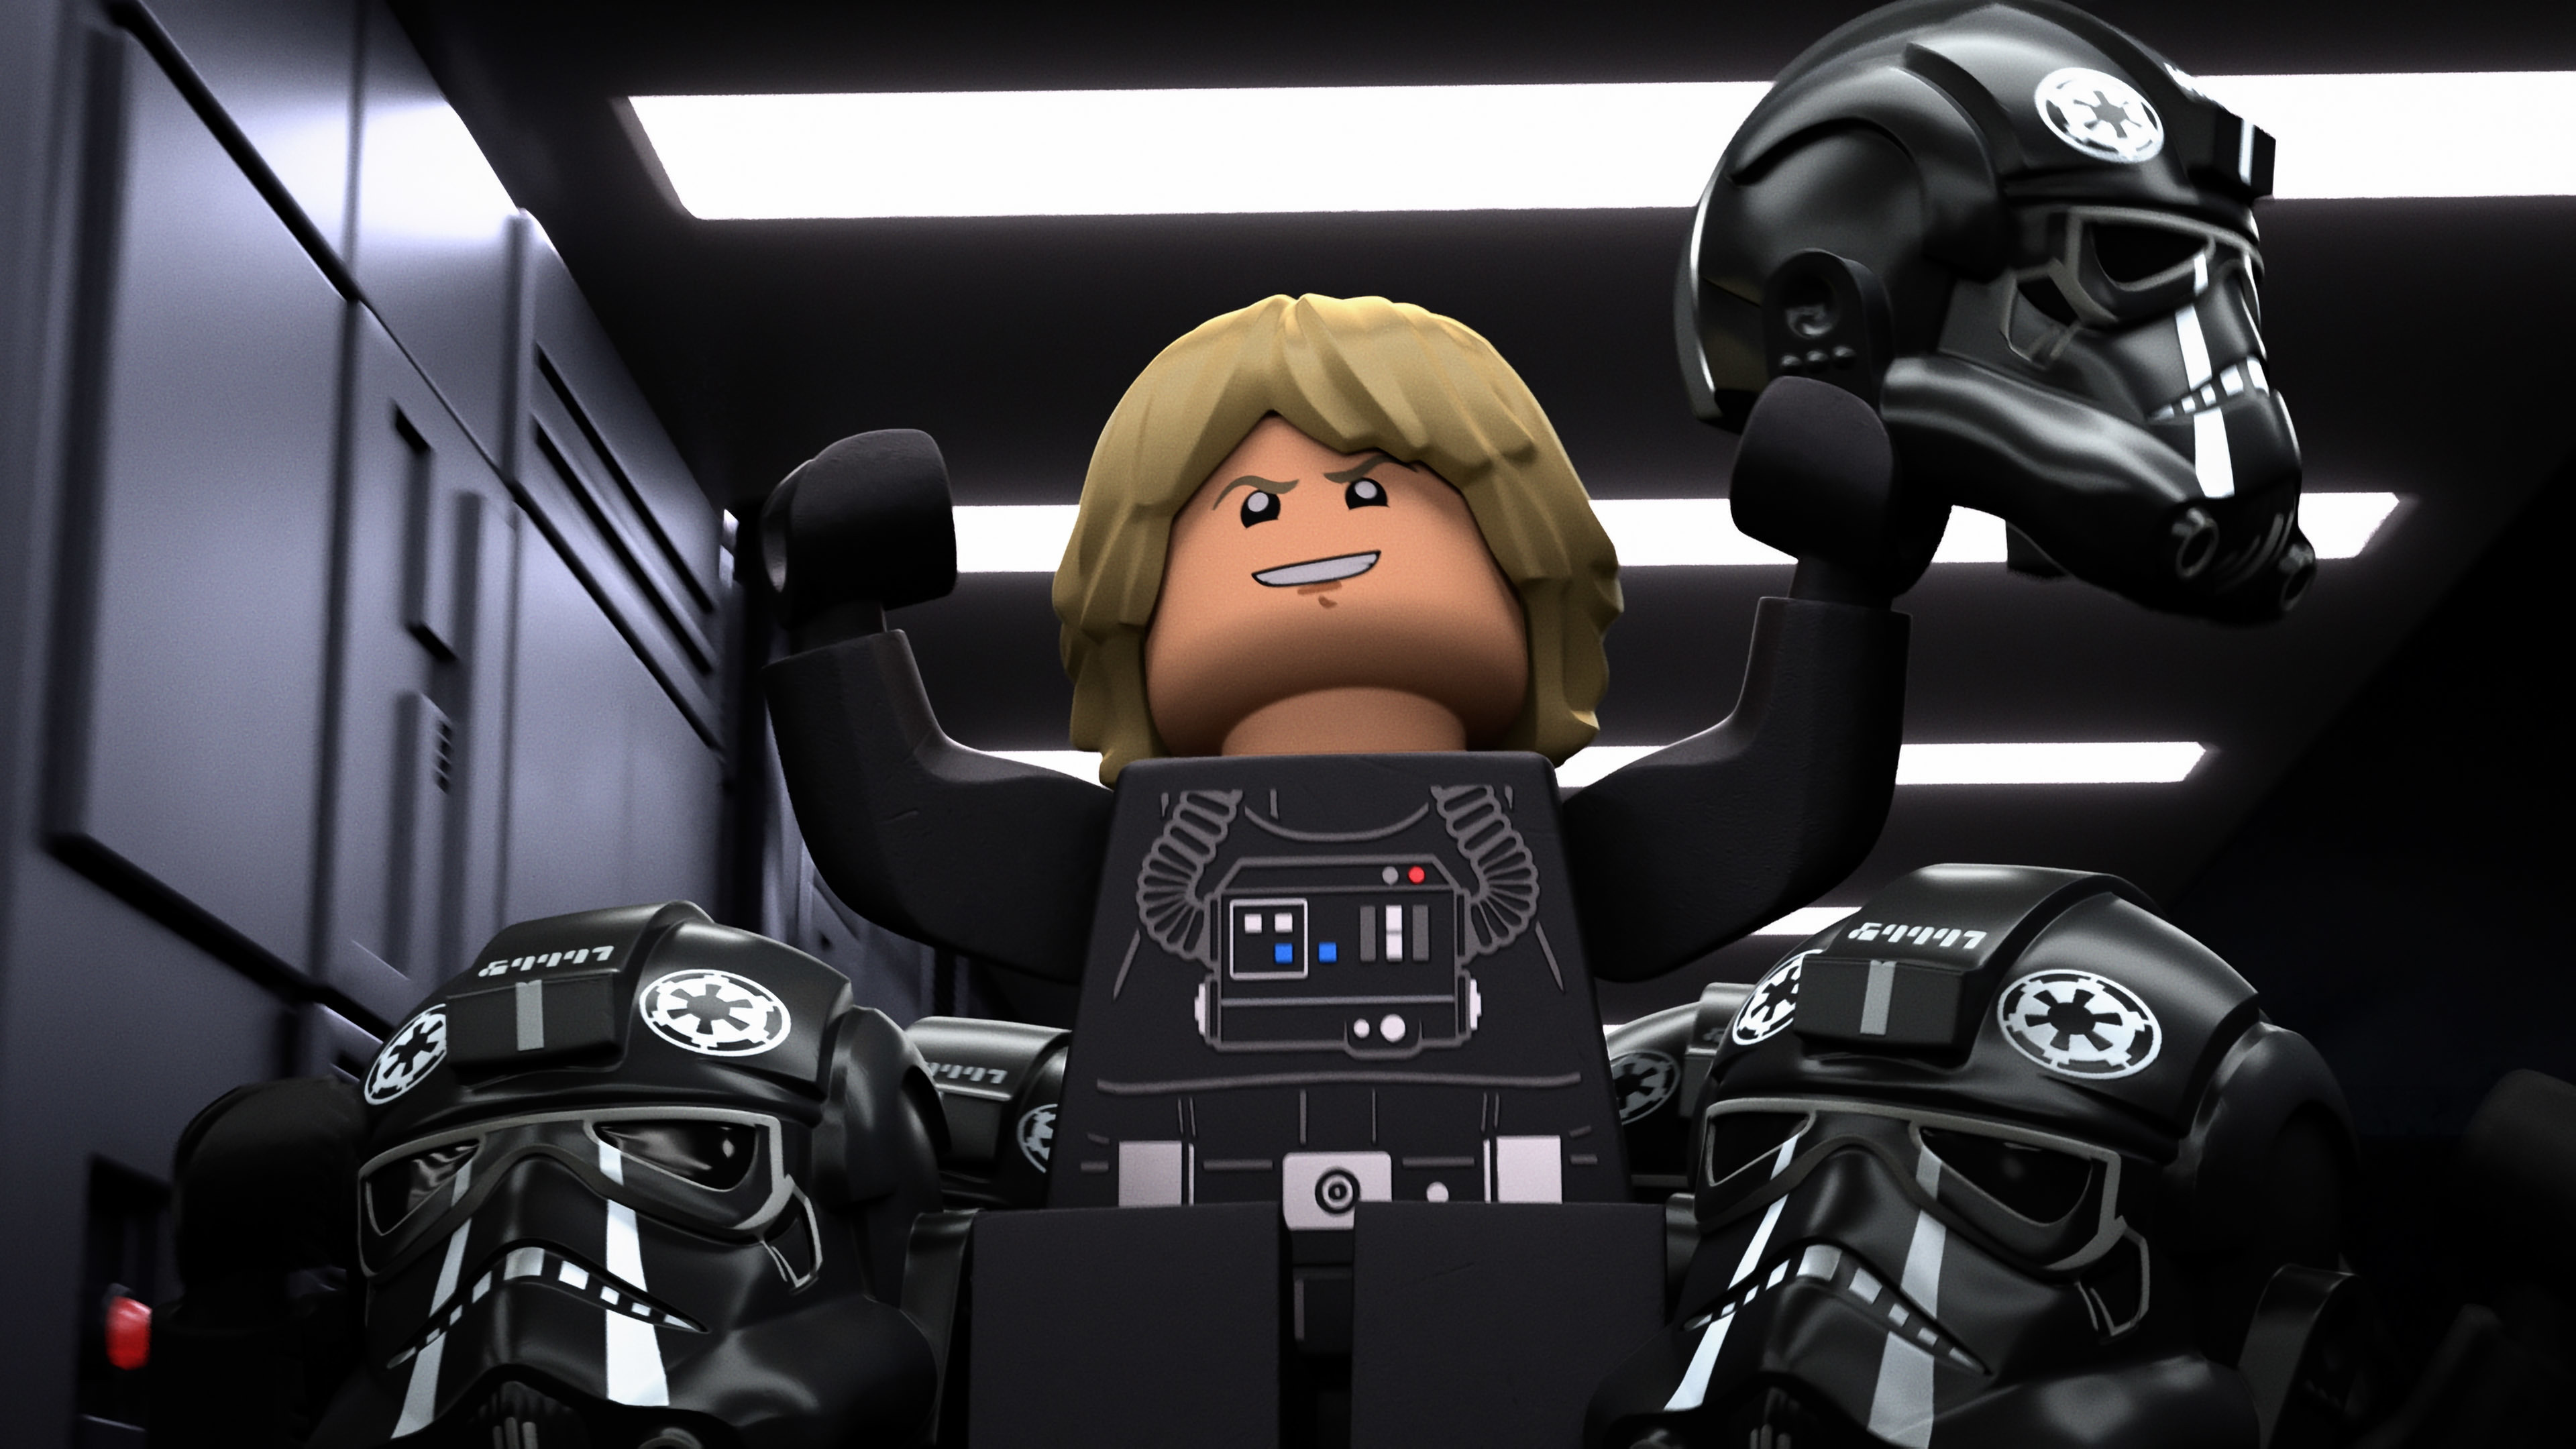 Luke Skywalker but evil in Empire uniform in LEGO Star Wars Terrifying Tales